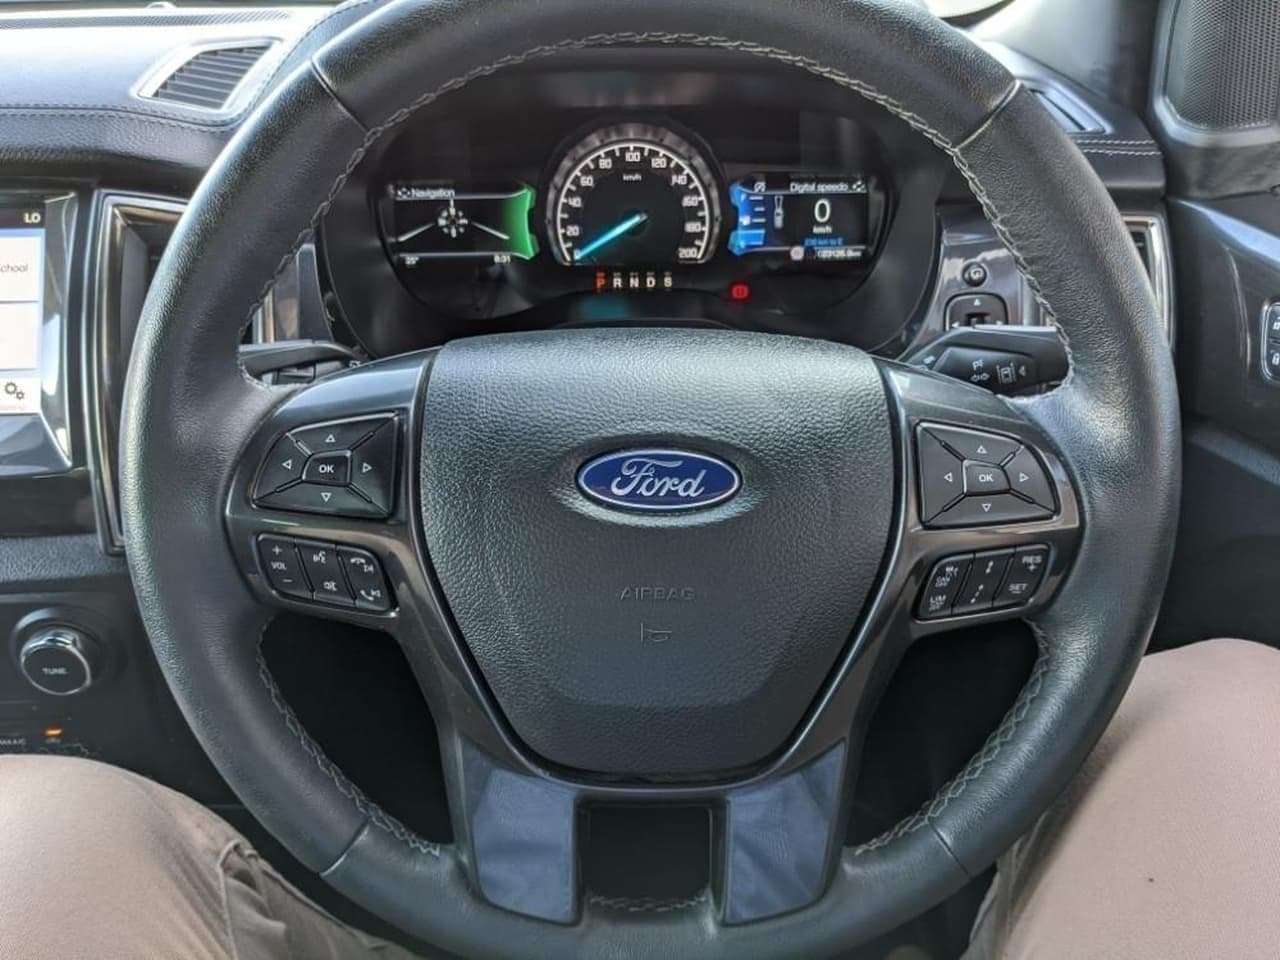 2019 Ford Everest UA II 2019.00MY TITANIUM SUV Image 14